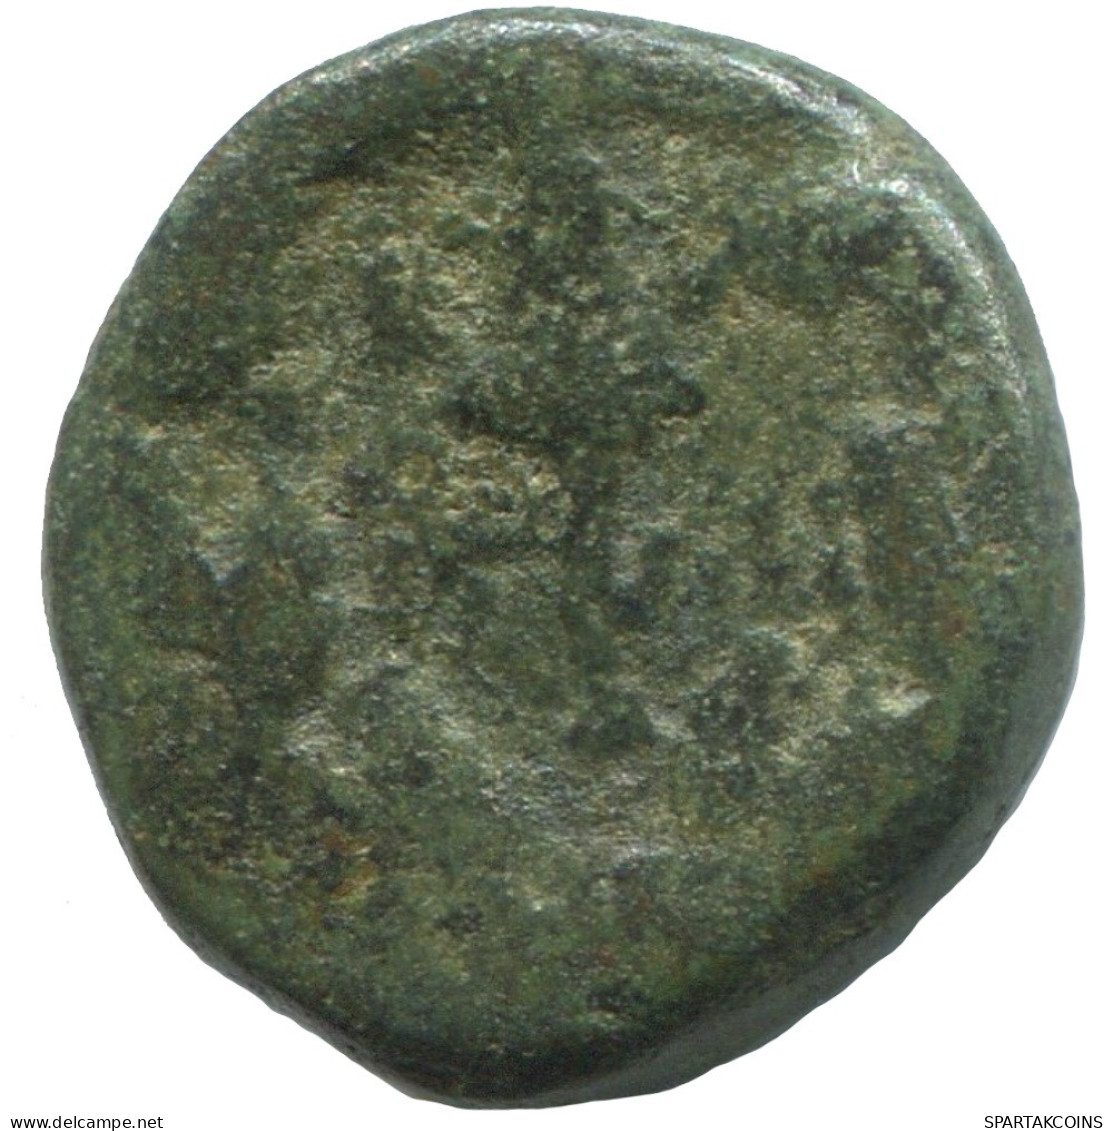 WREATH Ancient Authentic GREEK Coin 2.4g/15mm #SAV1264.11.U.A - Griechische Münzen